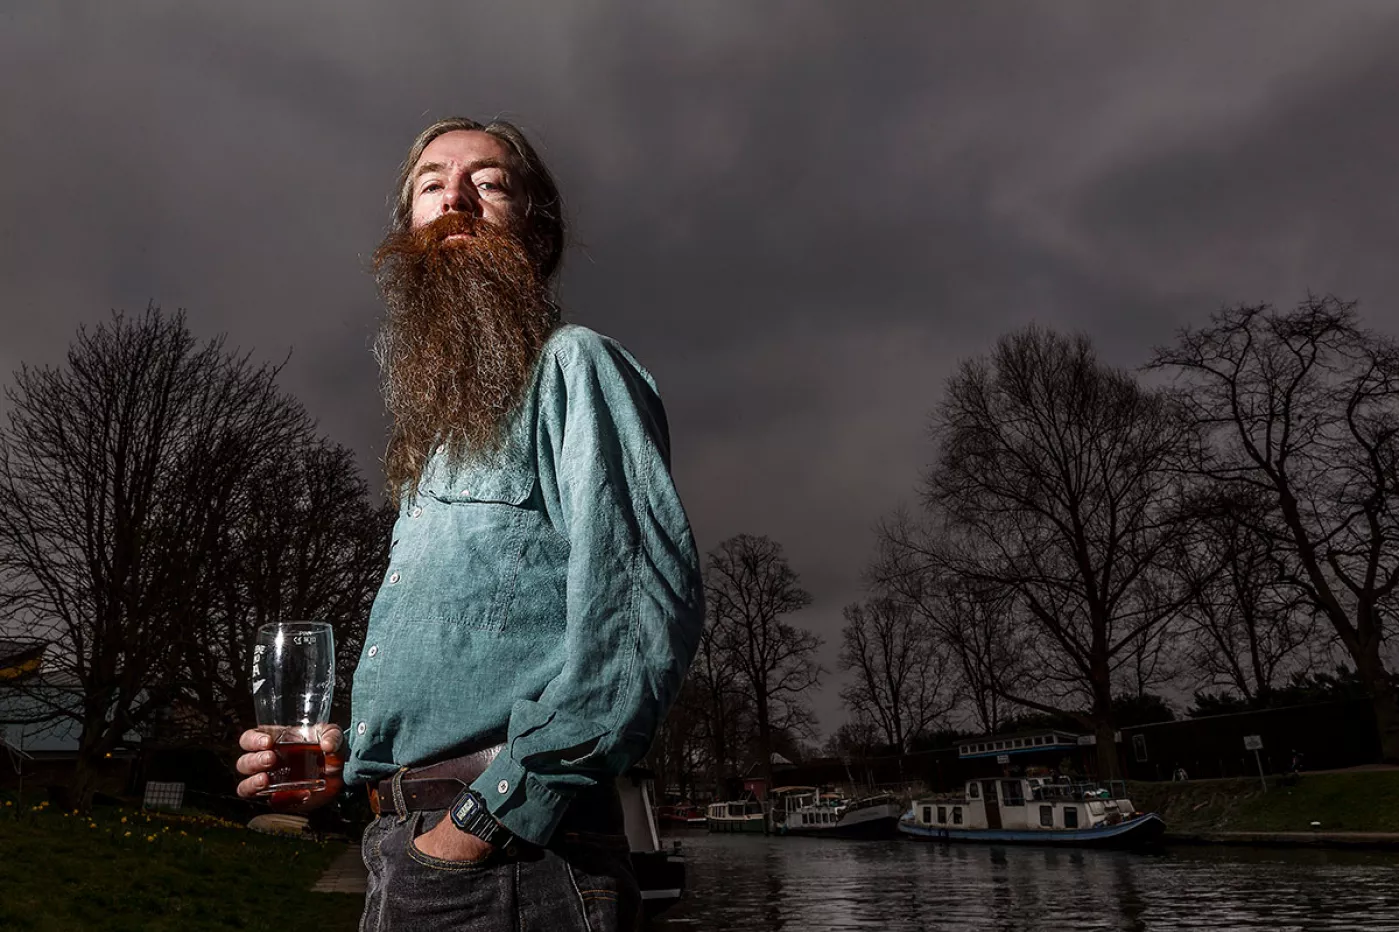 El gerontólogo Aubrey de Grey es uno de los mayores expertos en envejecimiento del mundo. FOTO: Carlos García Pozo.